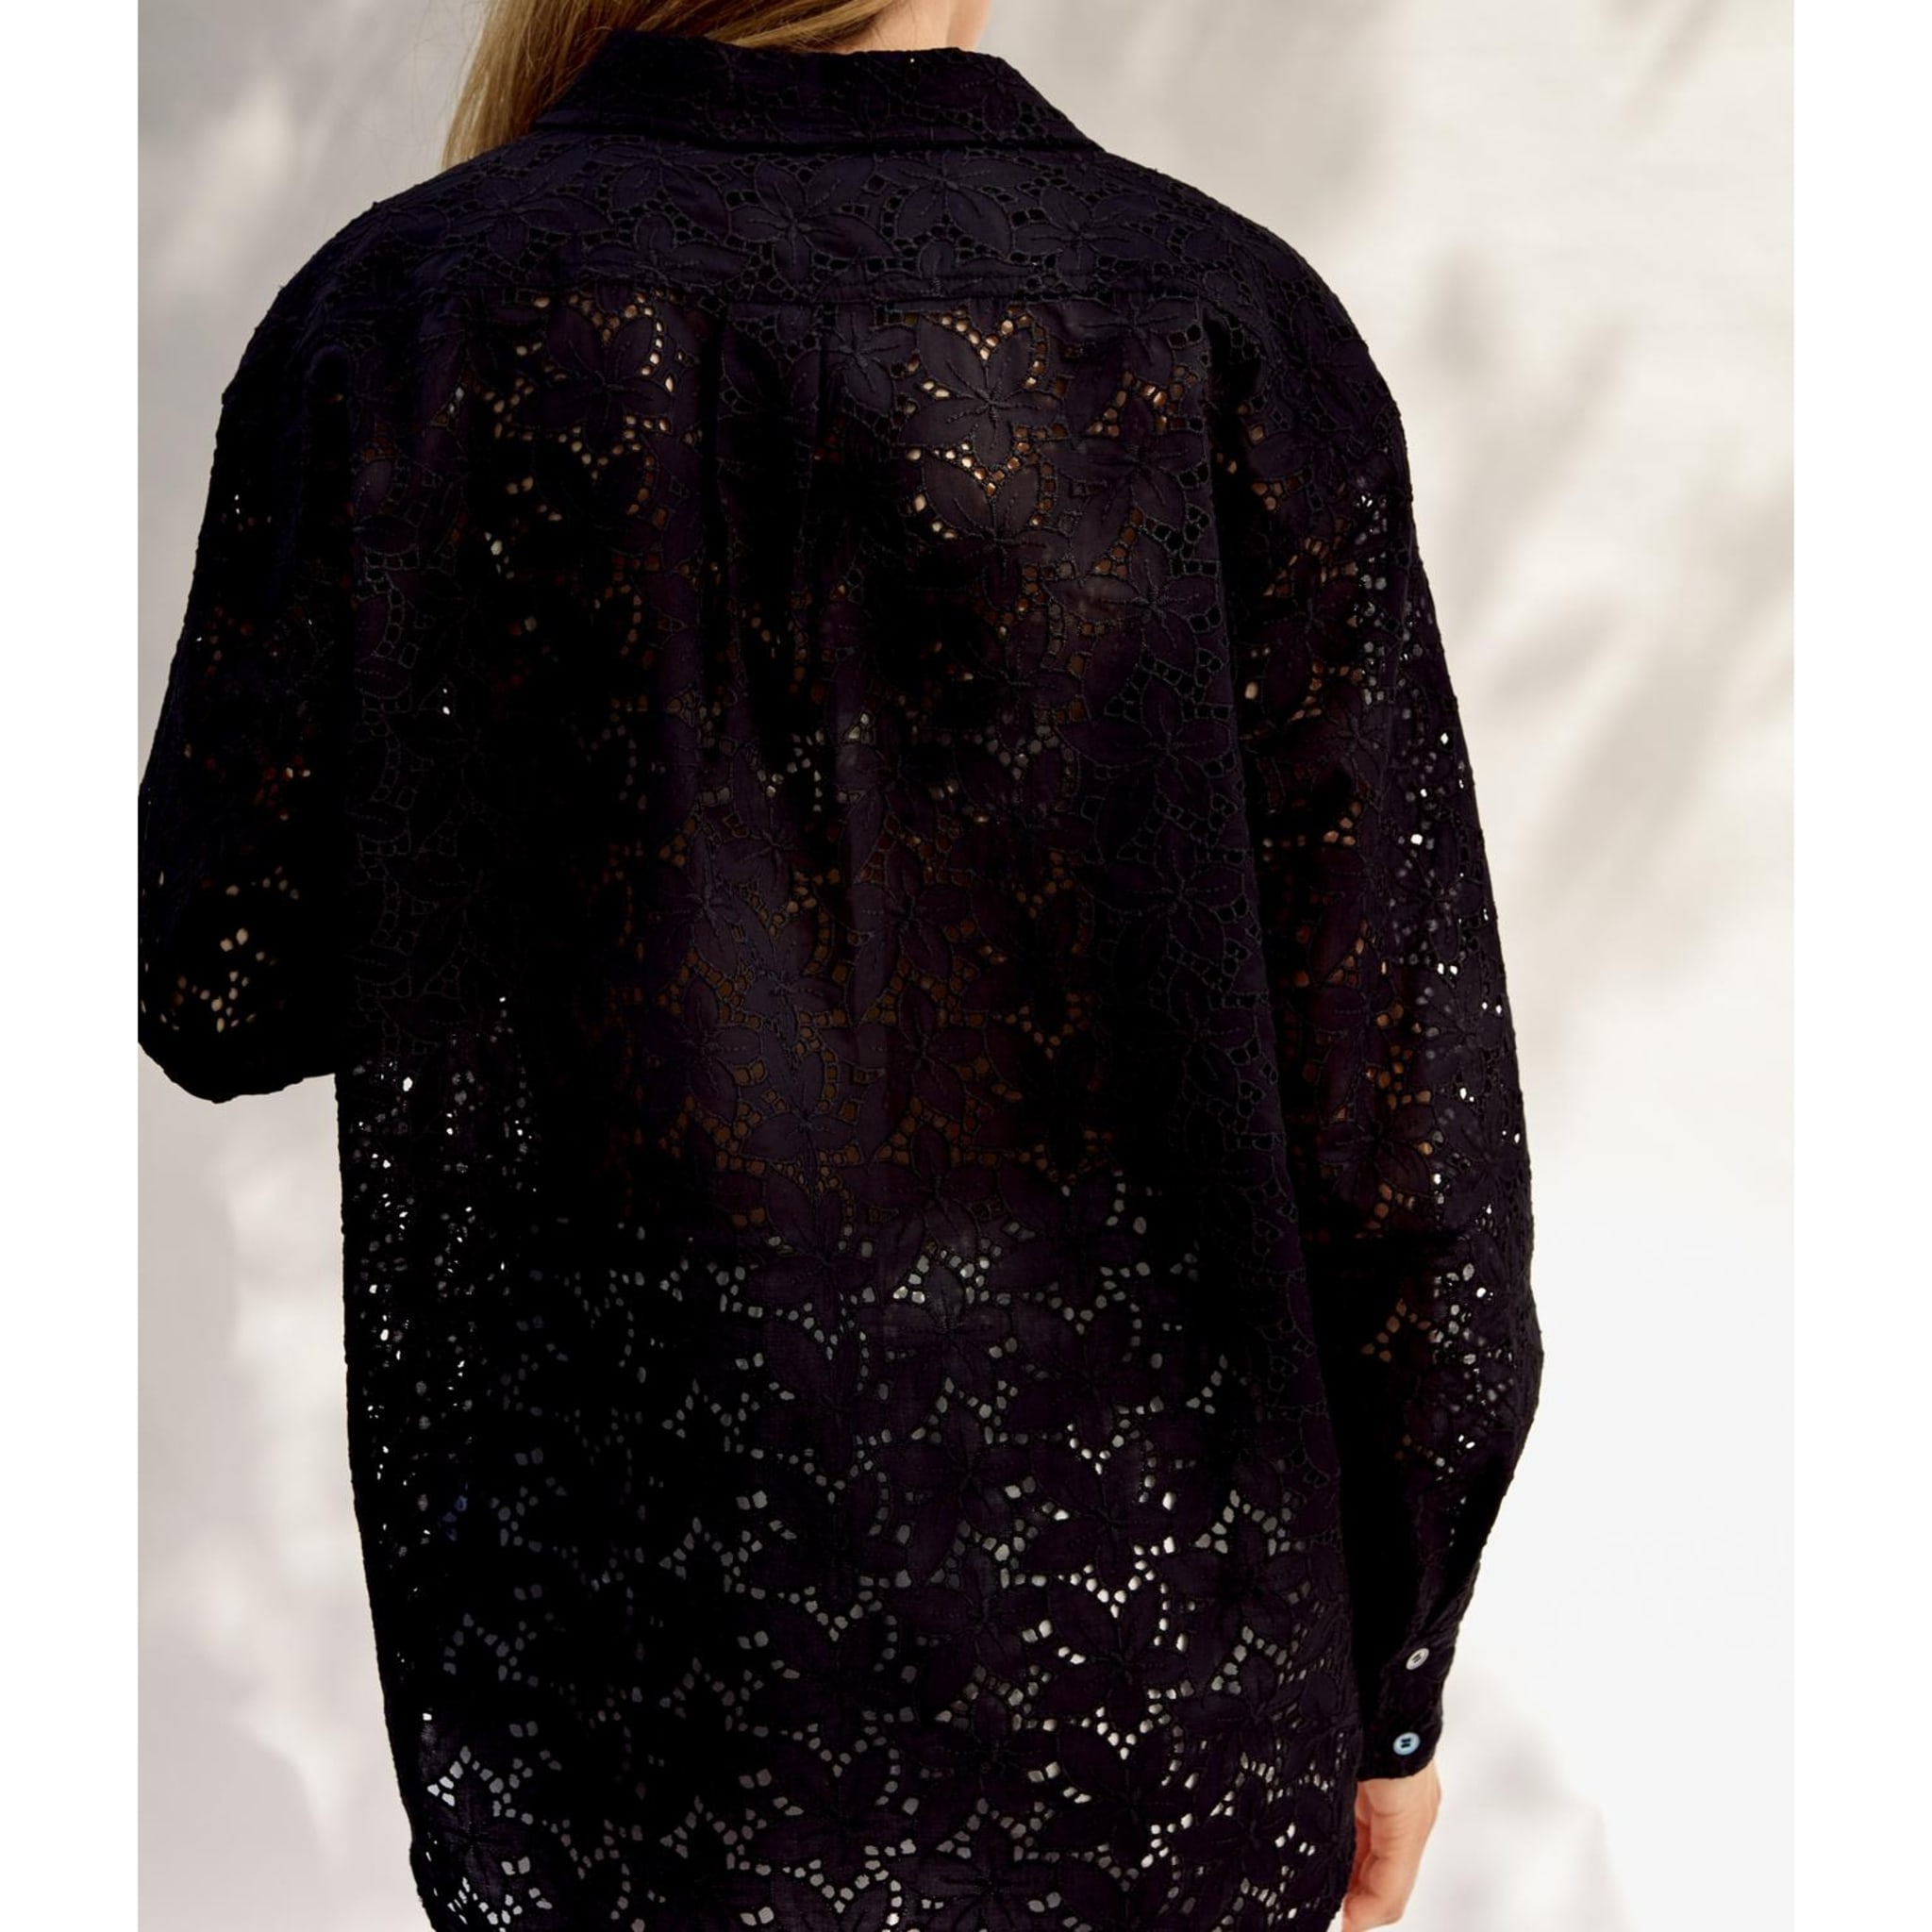 Kim Shirt, black lace